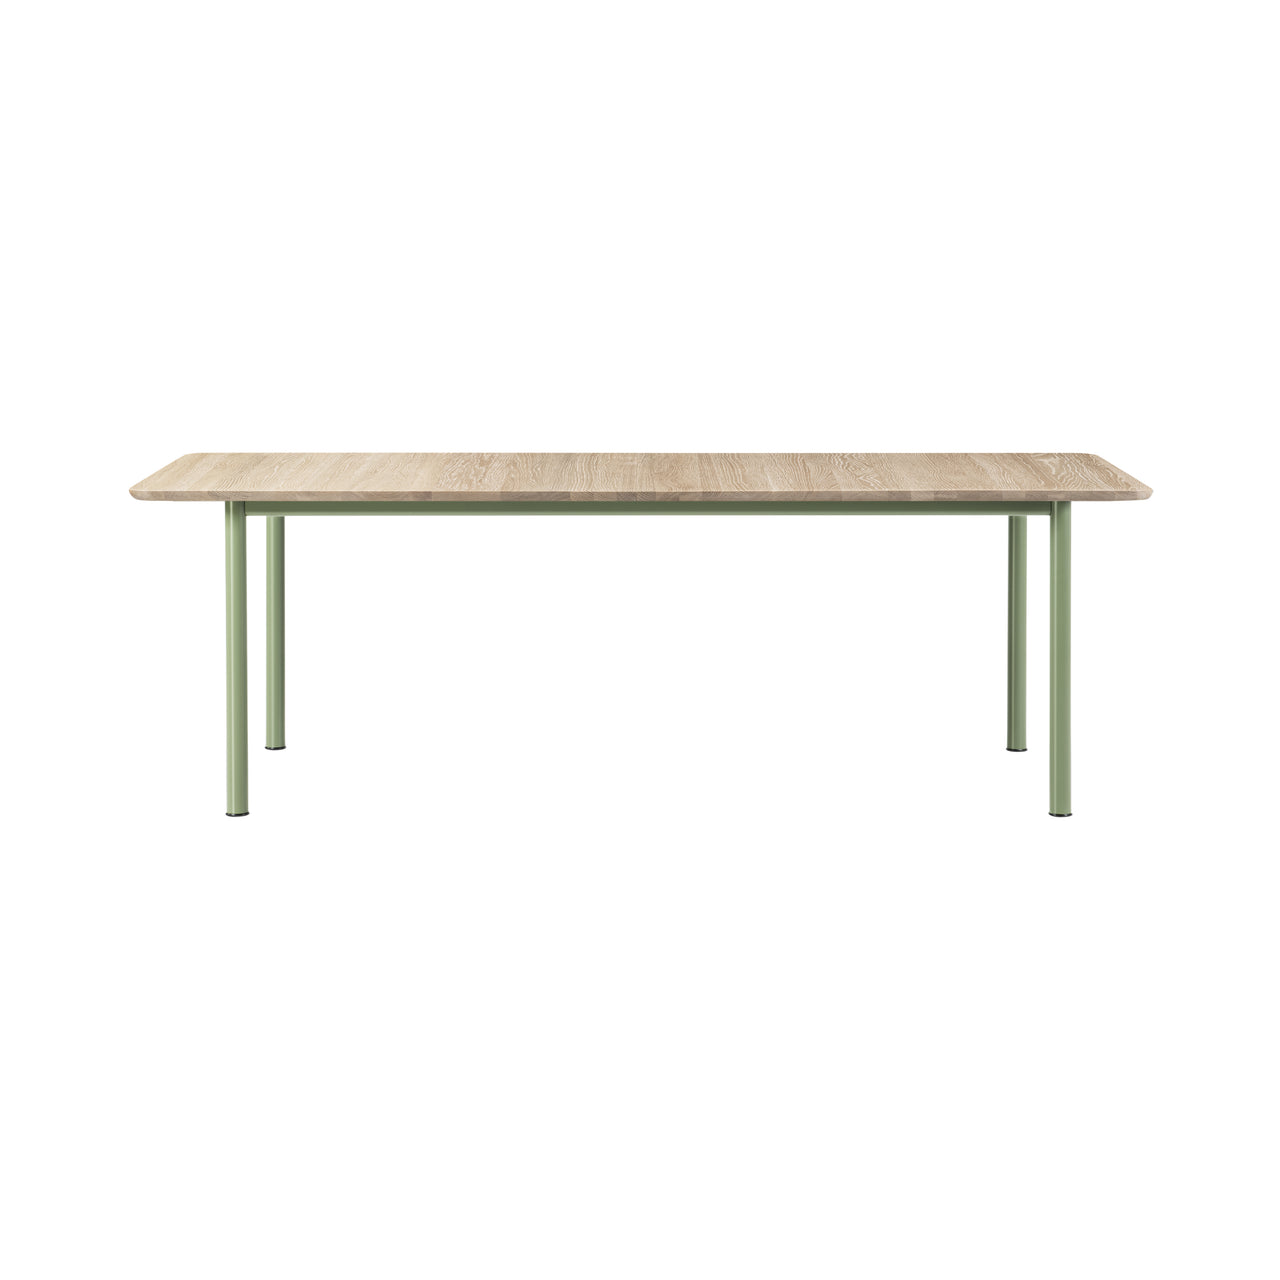 Plan Extendable Table: Light Oiled Oak + Modernist Green